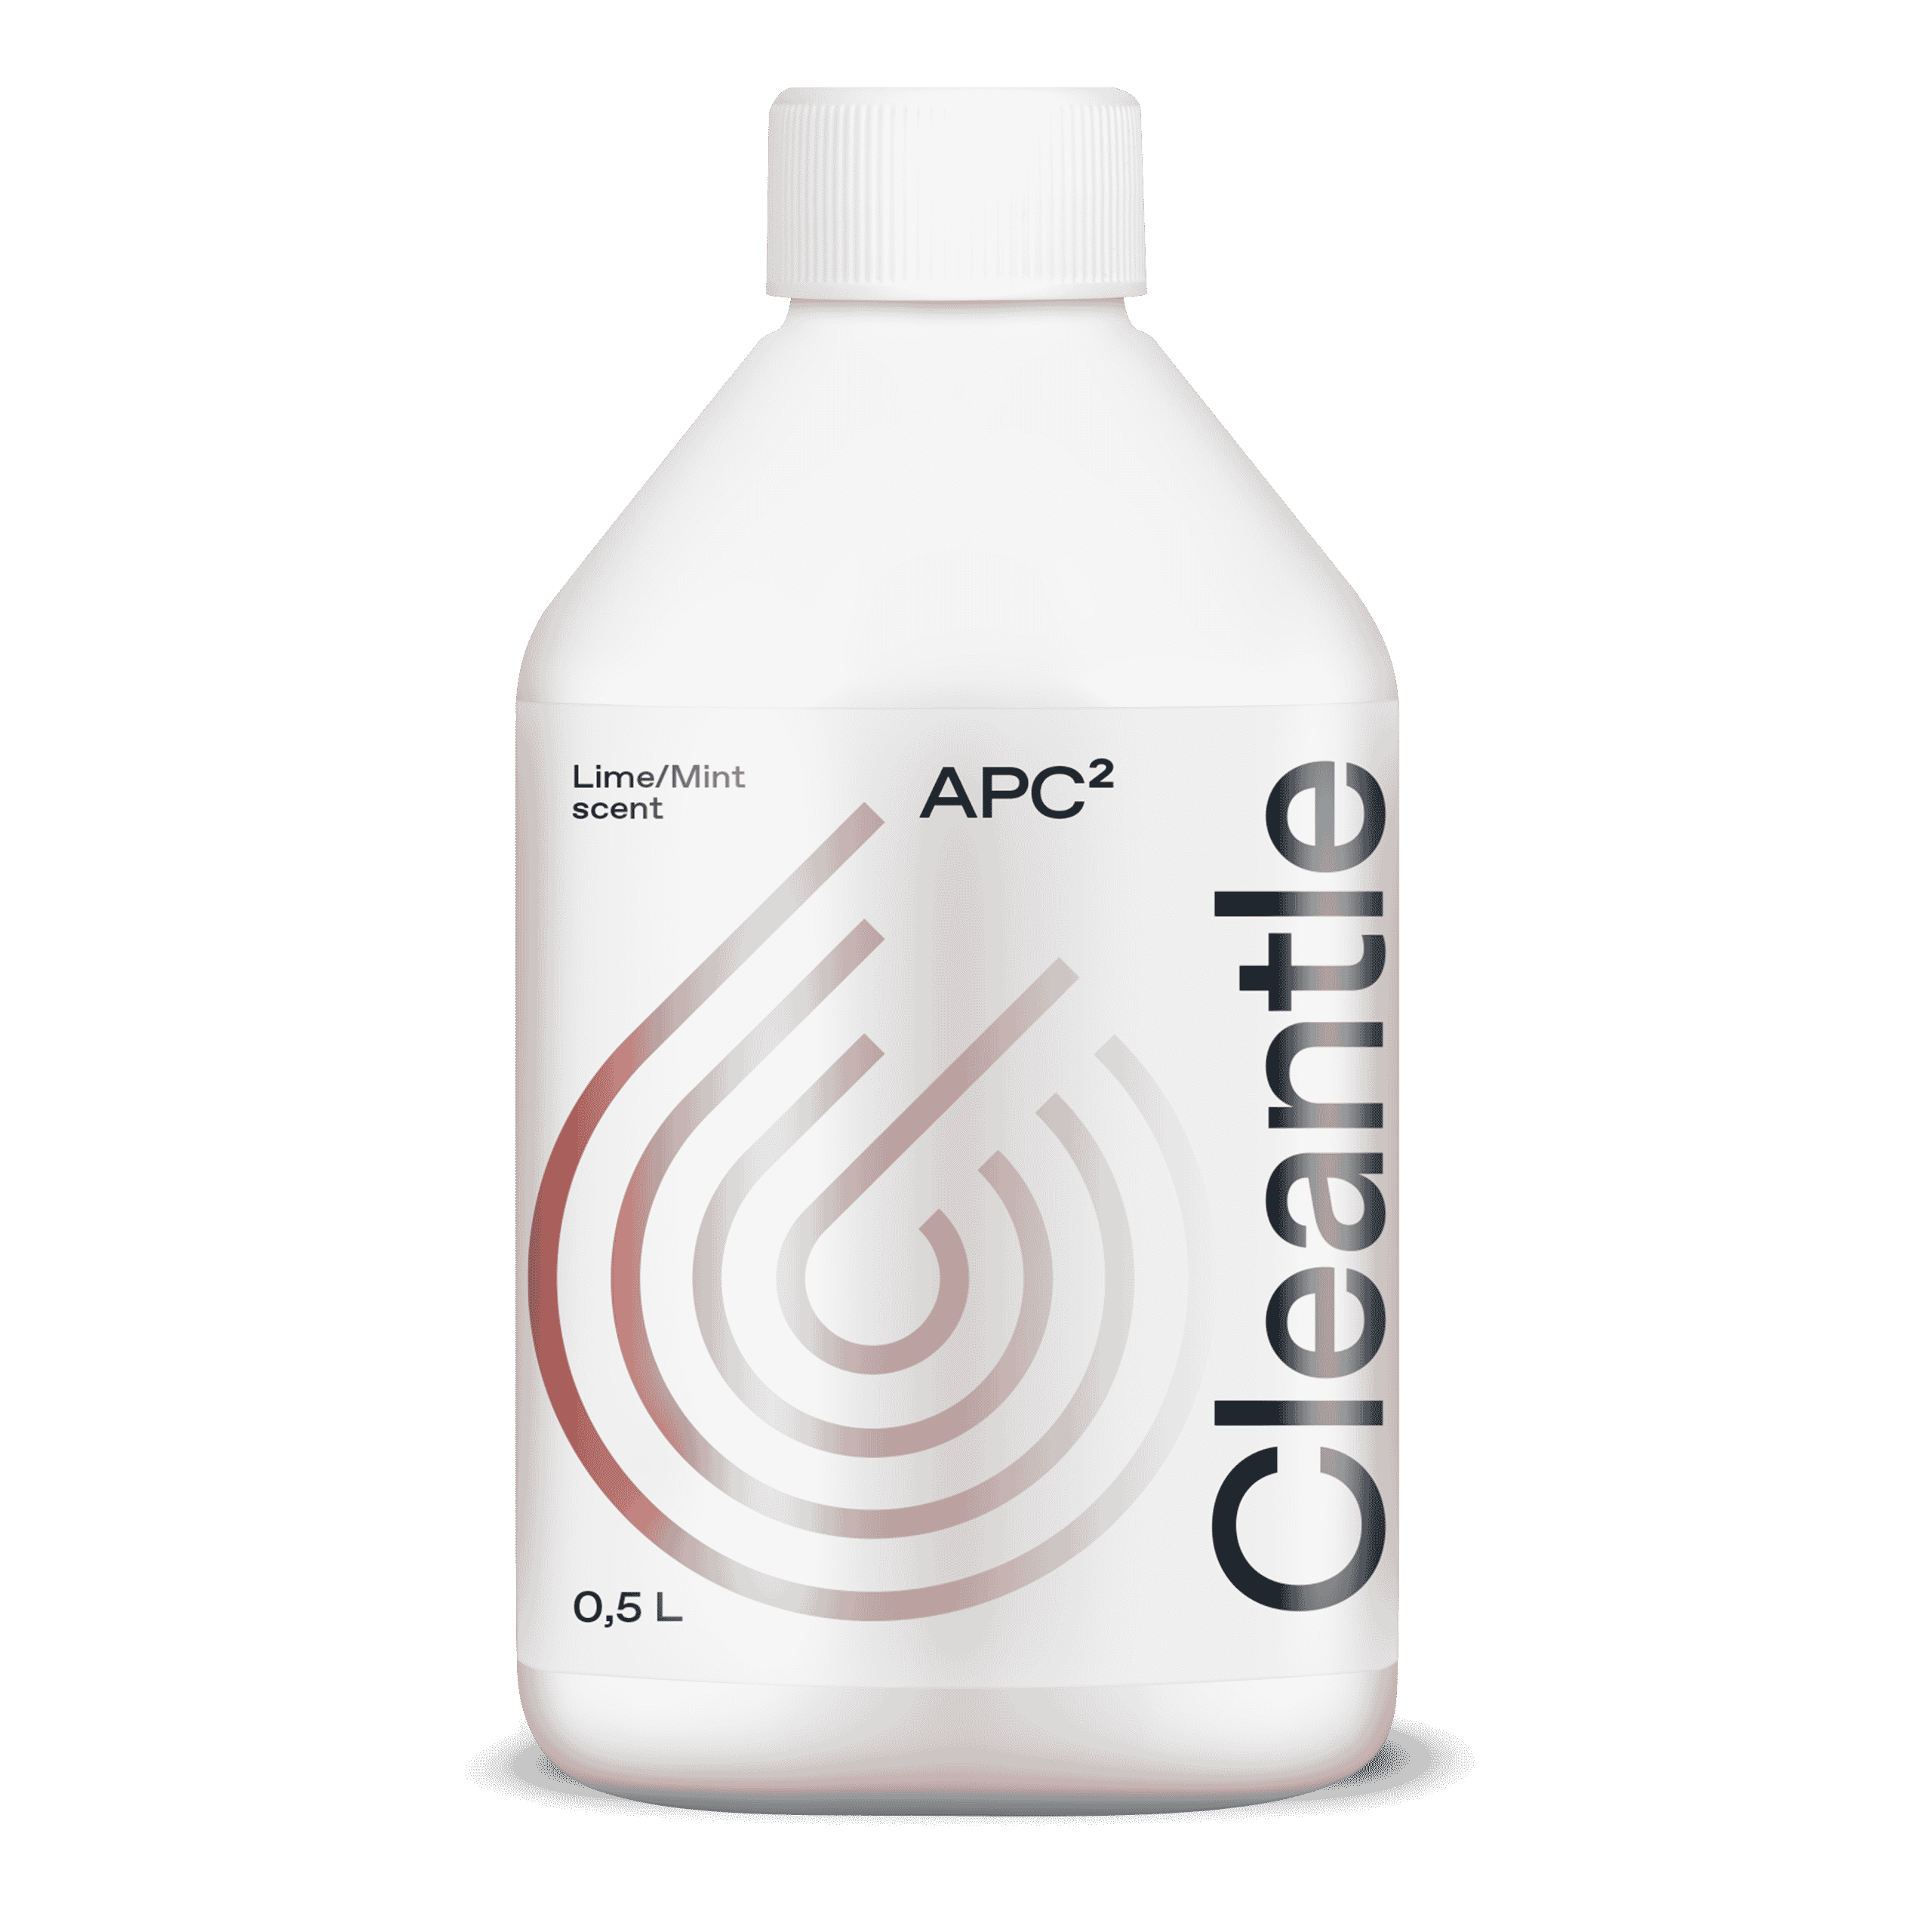 Cleantle APC allesreiniger | limoen en mint geur 1 liter